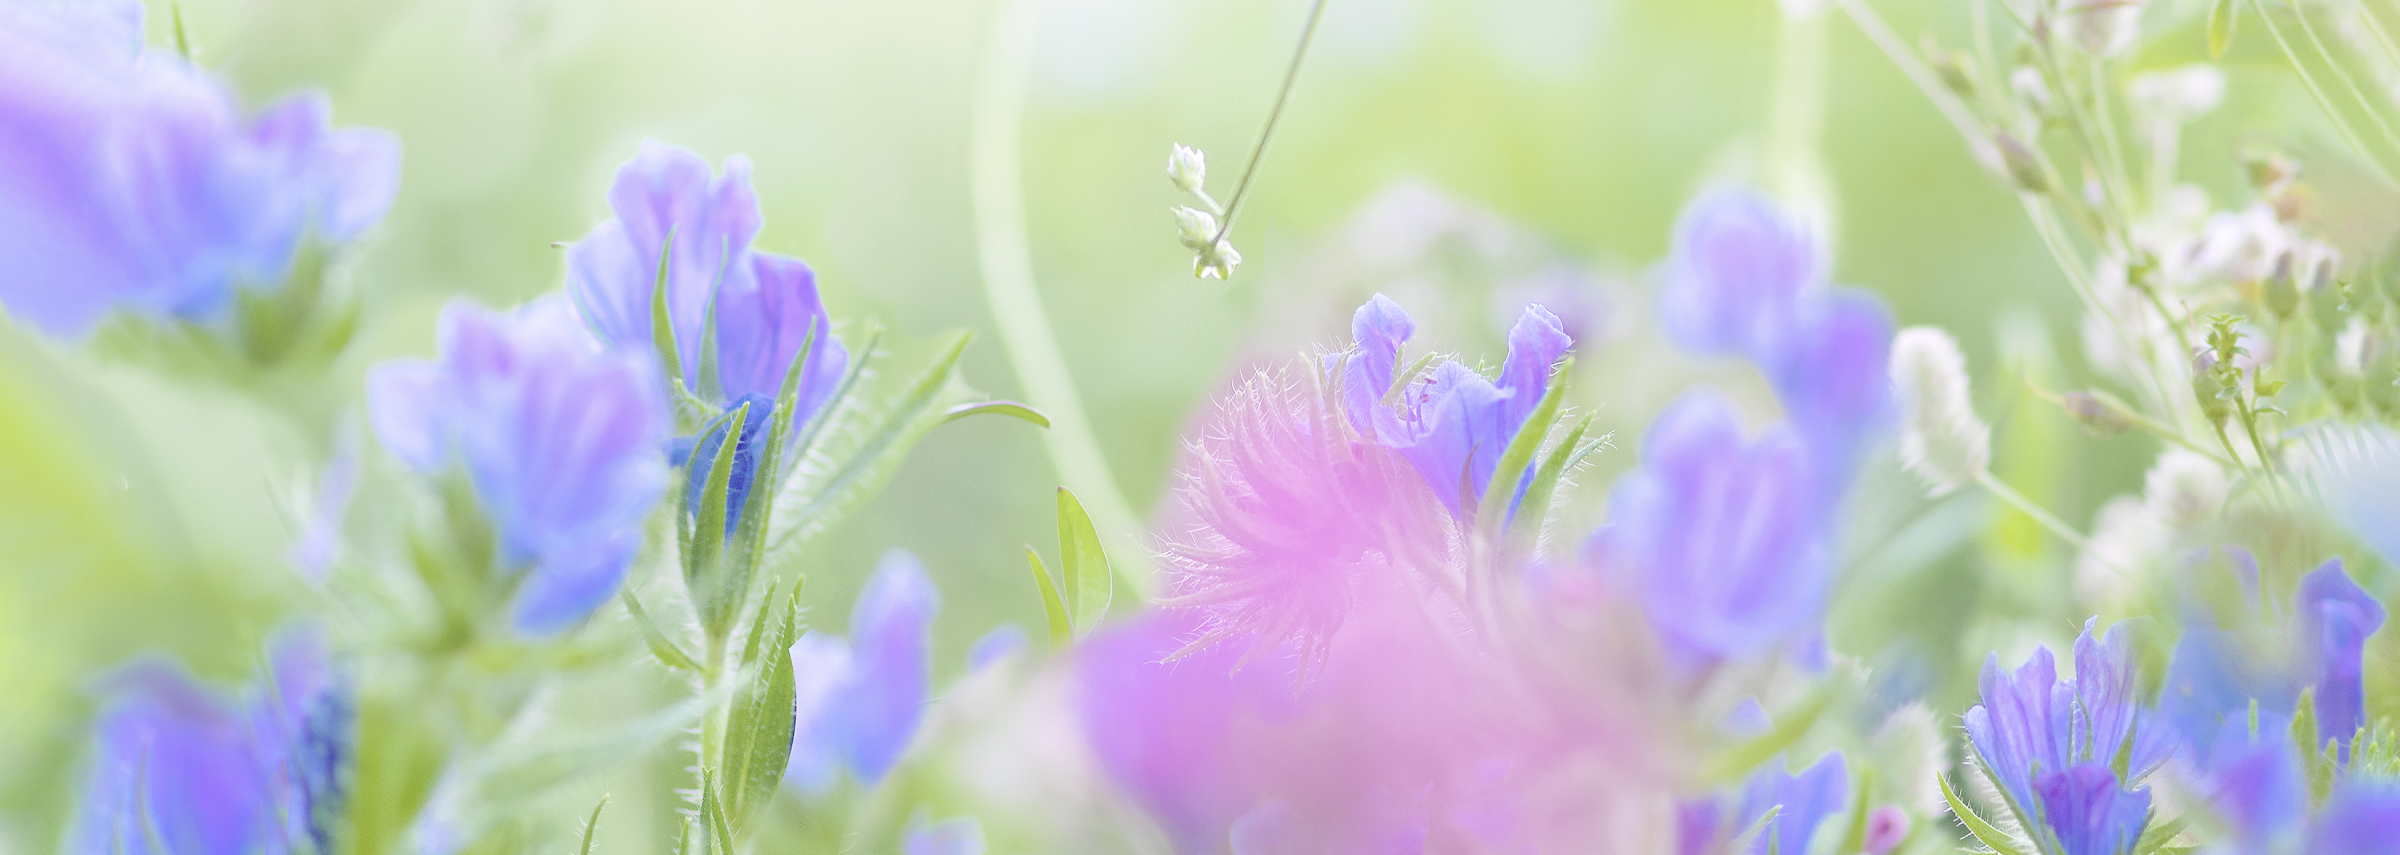 エキウム畑――紫色の庭